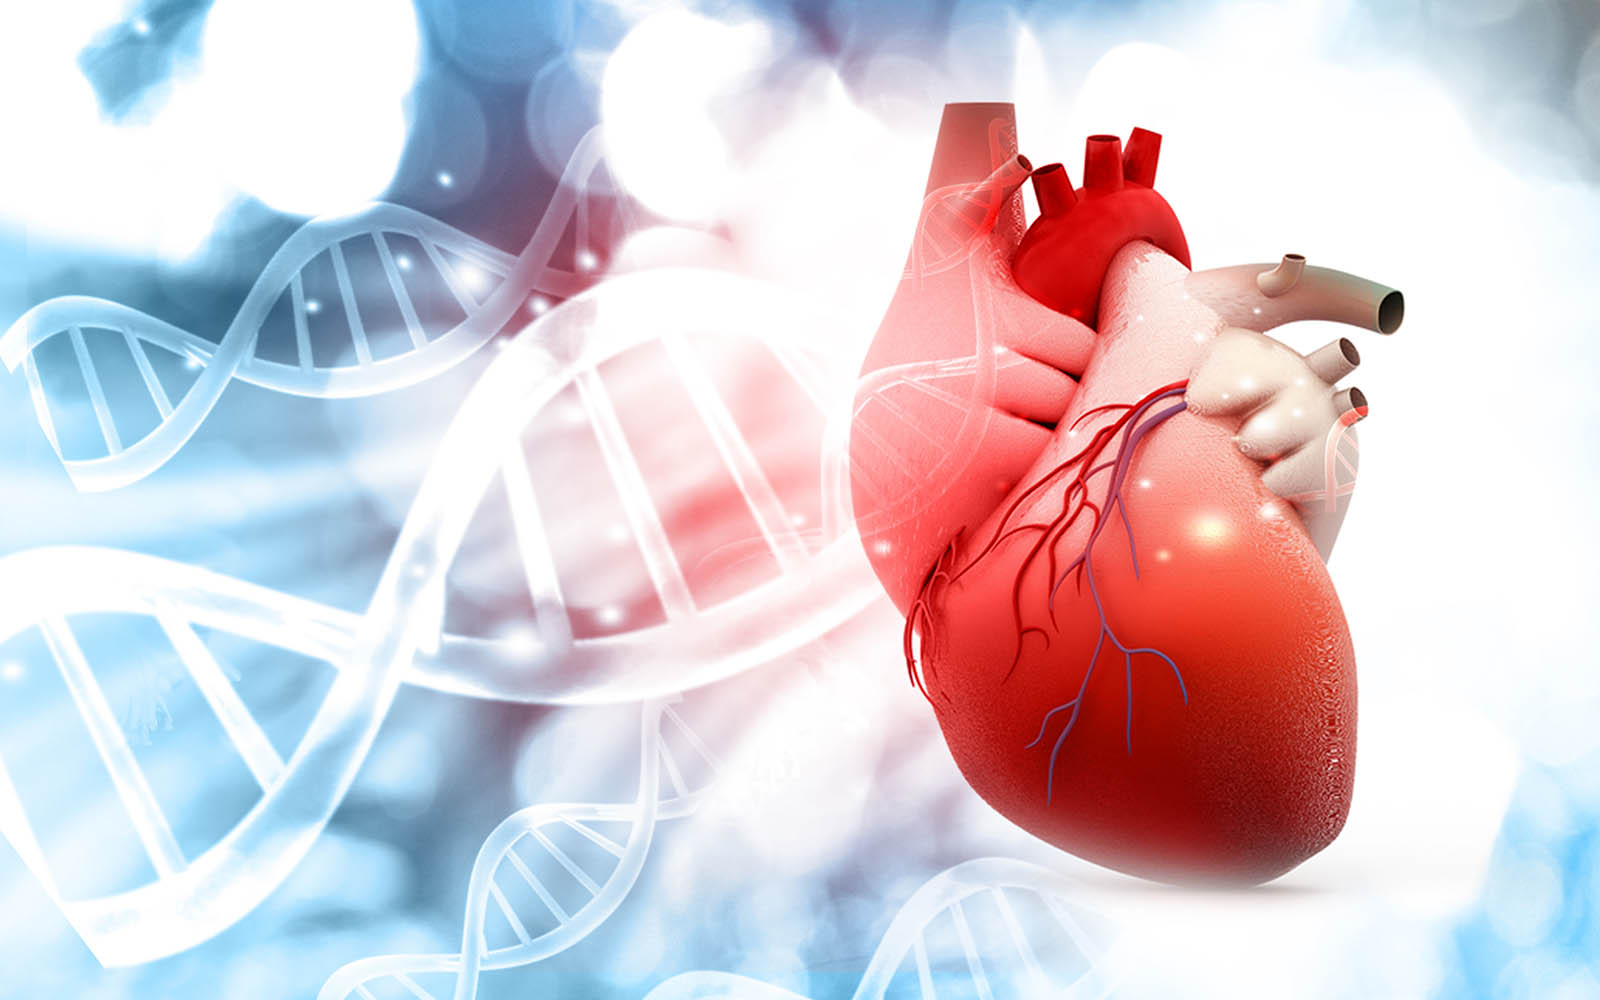 Koronare Herzkrankheit: Einfluss der genetischen Veranlagung